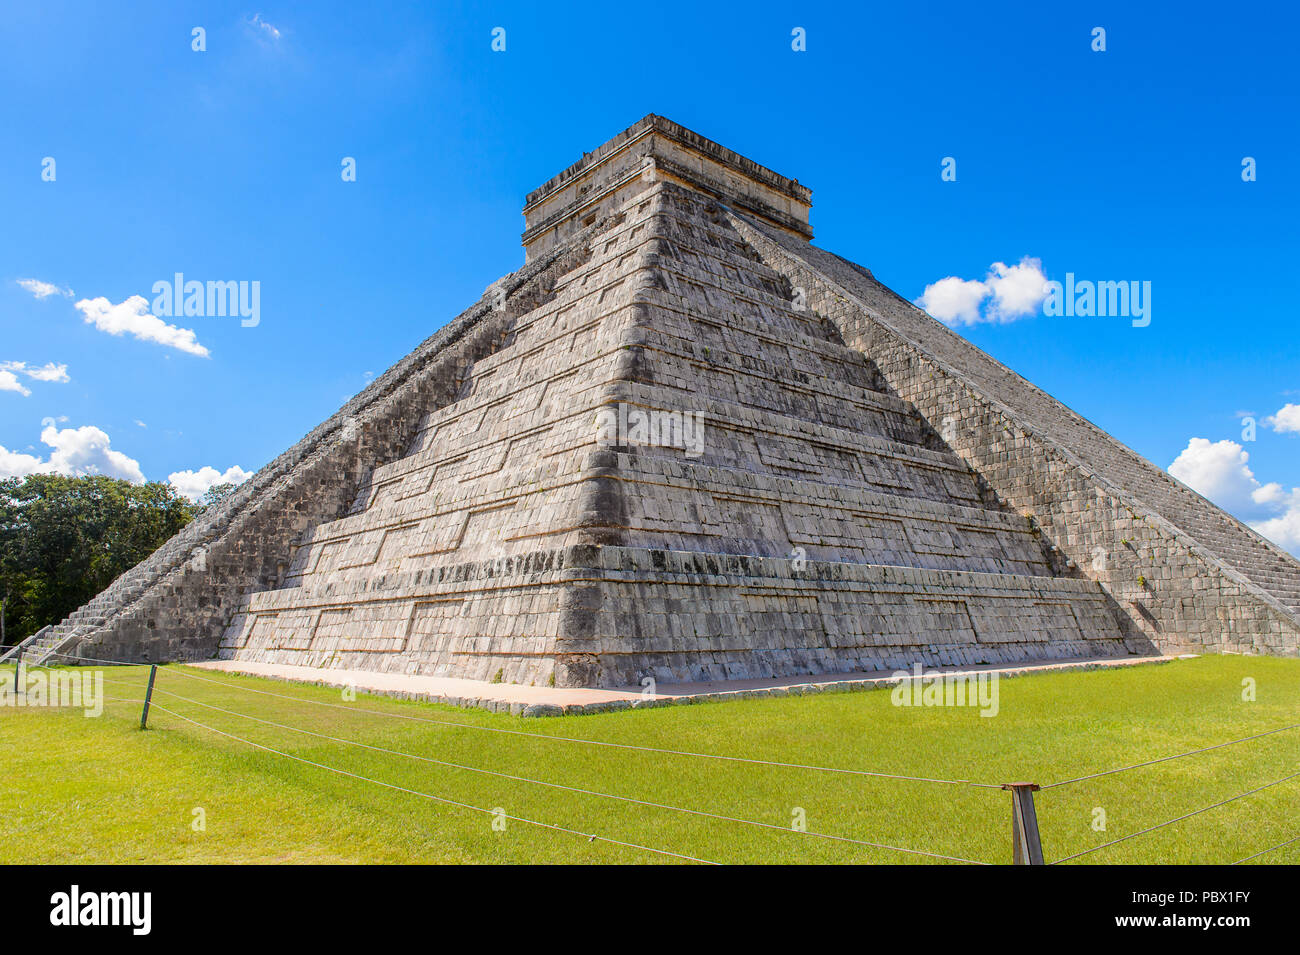 El Castillo (Temple de Kukulcan), une étape mésoaméricain-pyramide, Chichen Itza. C'était une grande ville précolombienne construite par les Mayas de la termin Banque D'Images